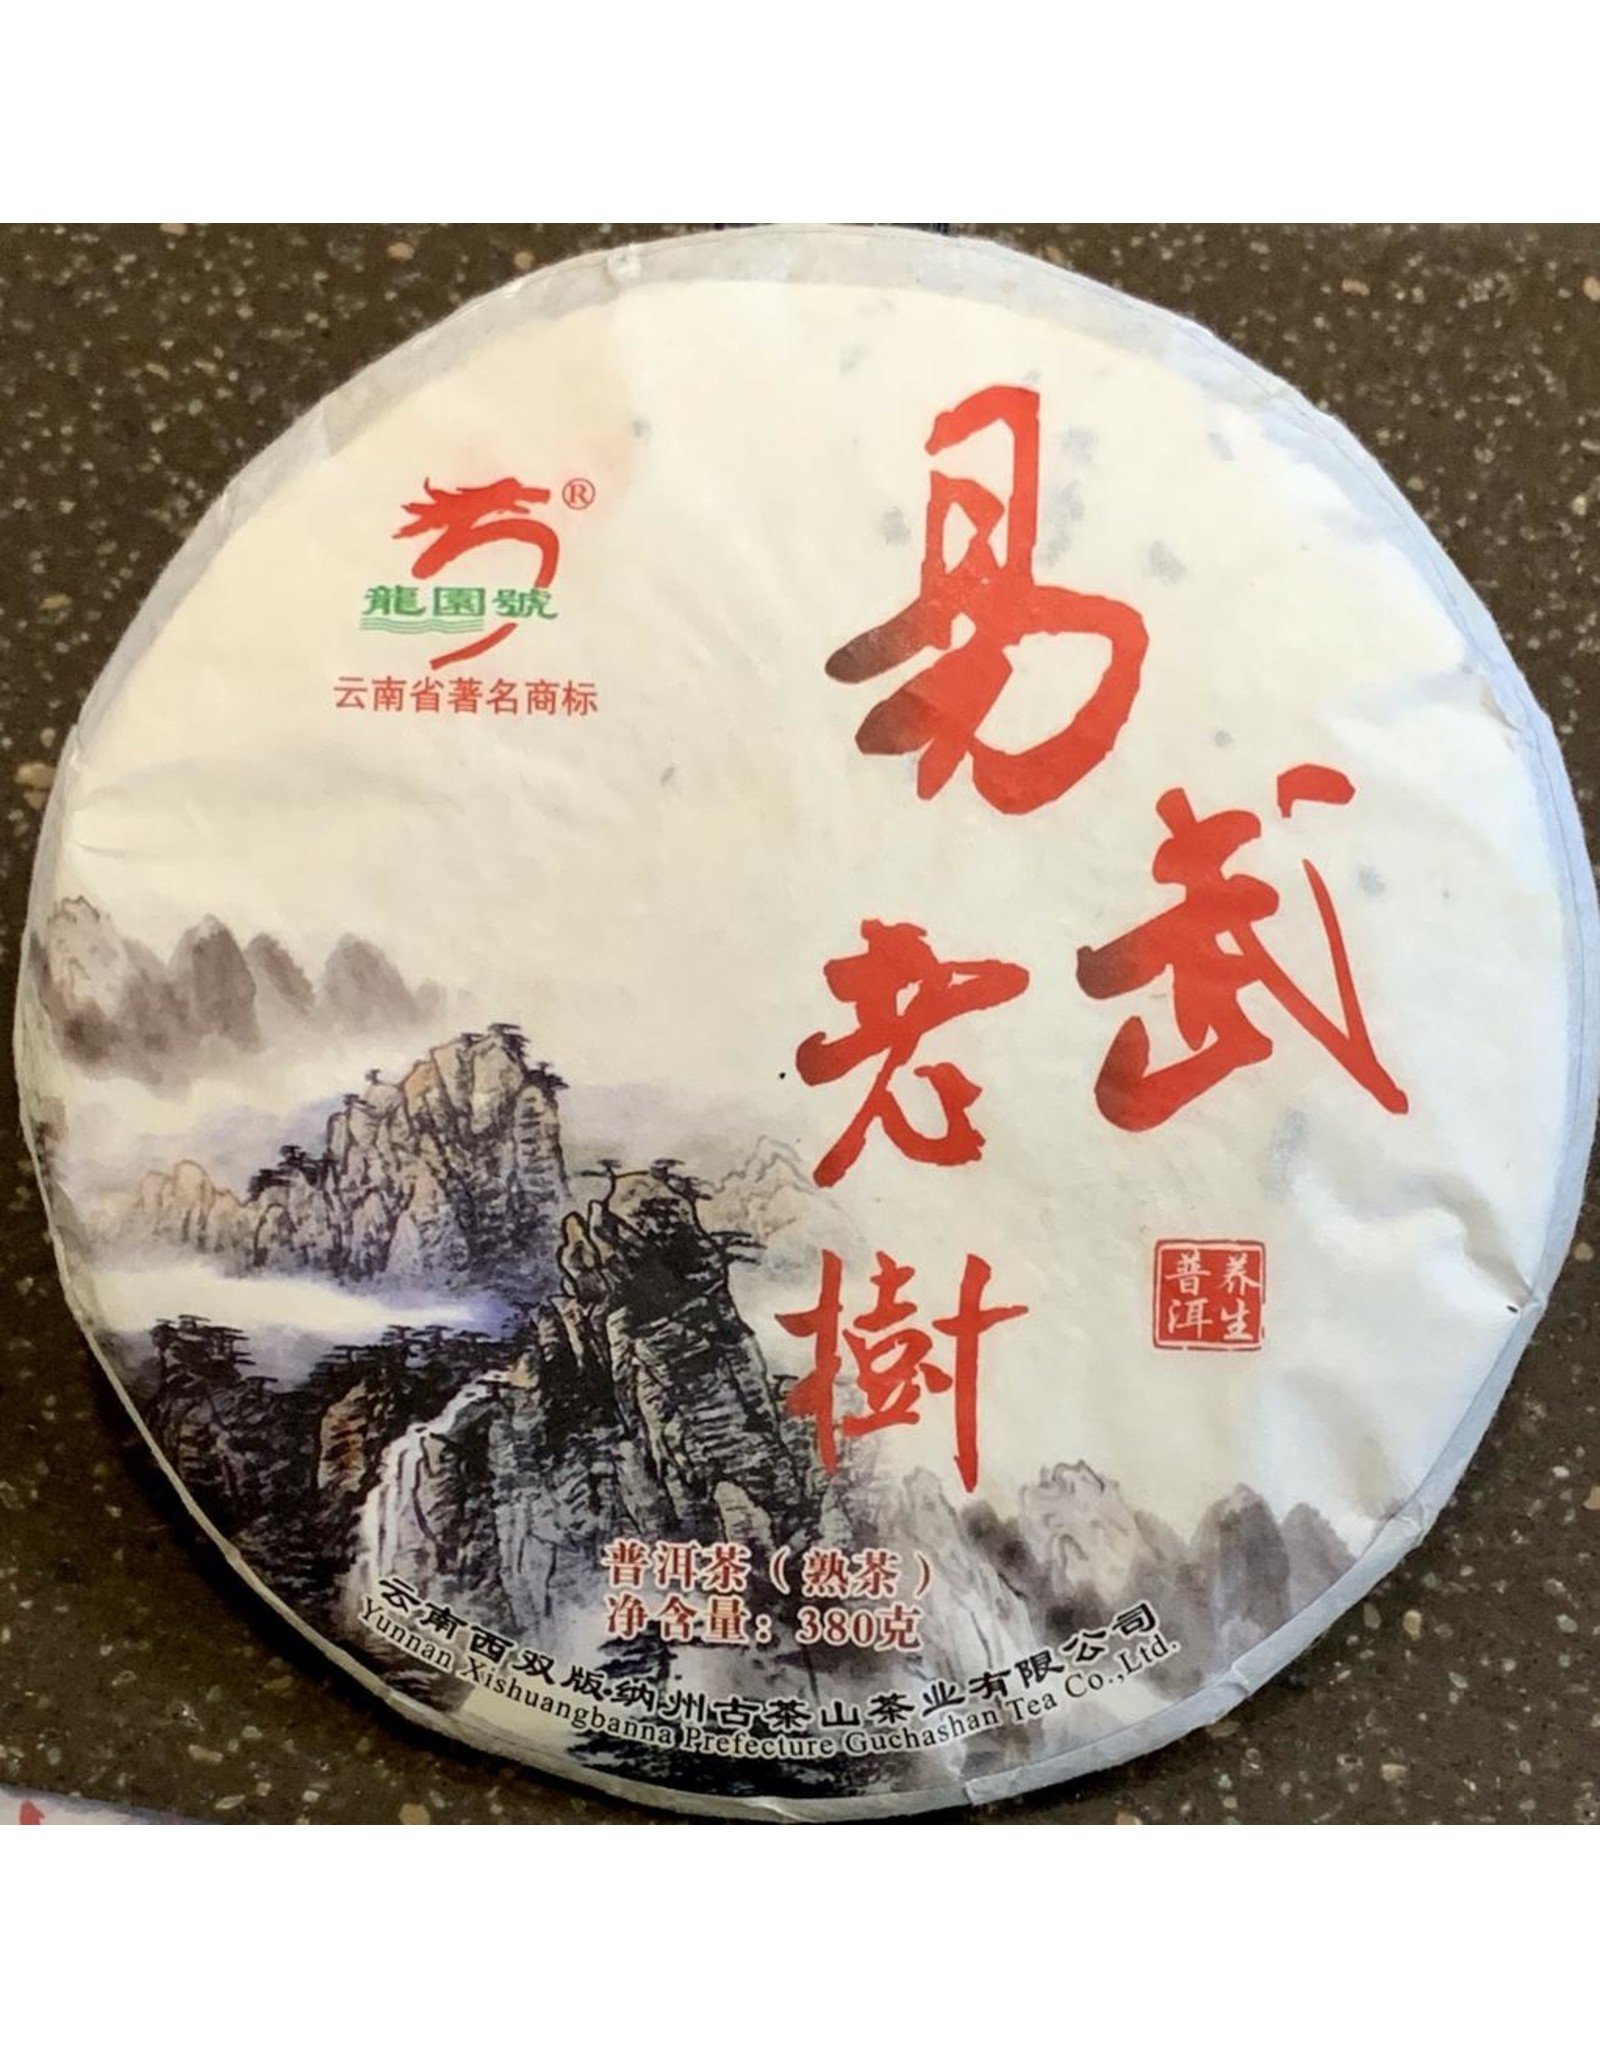 Tea from China 2016 Guchashan (DaDuGang) Puer (COOKED/SHU